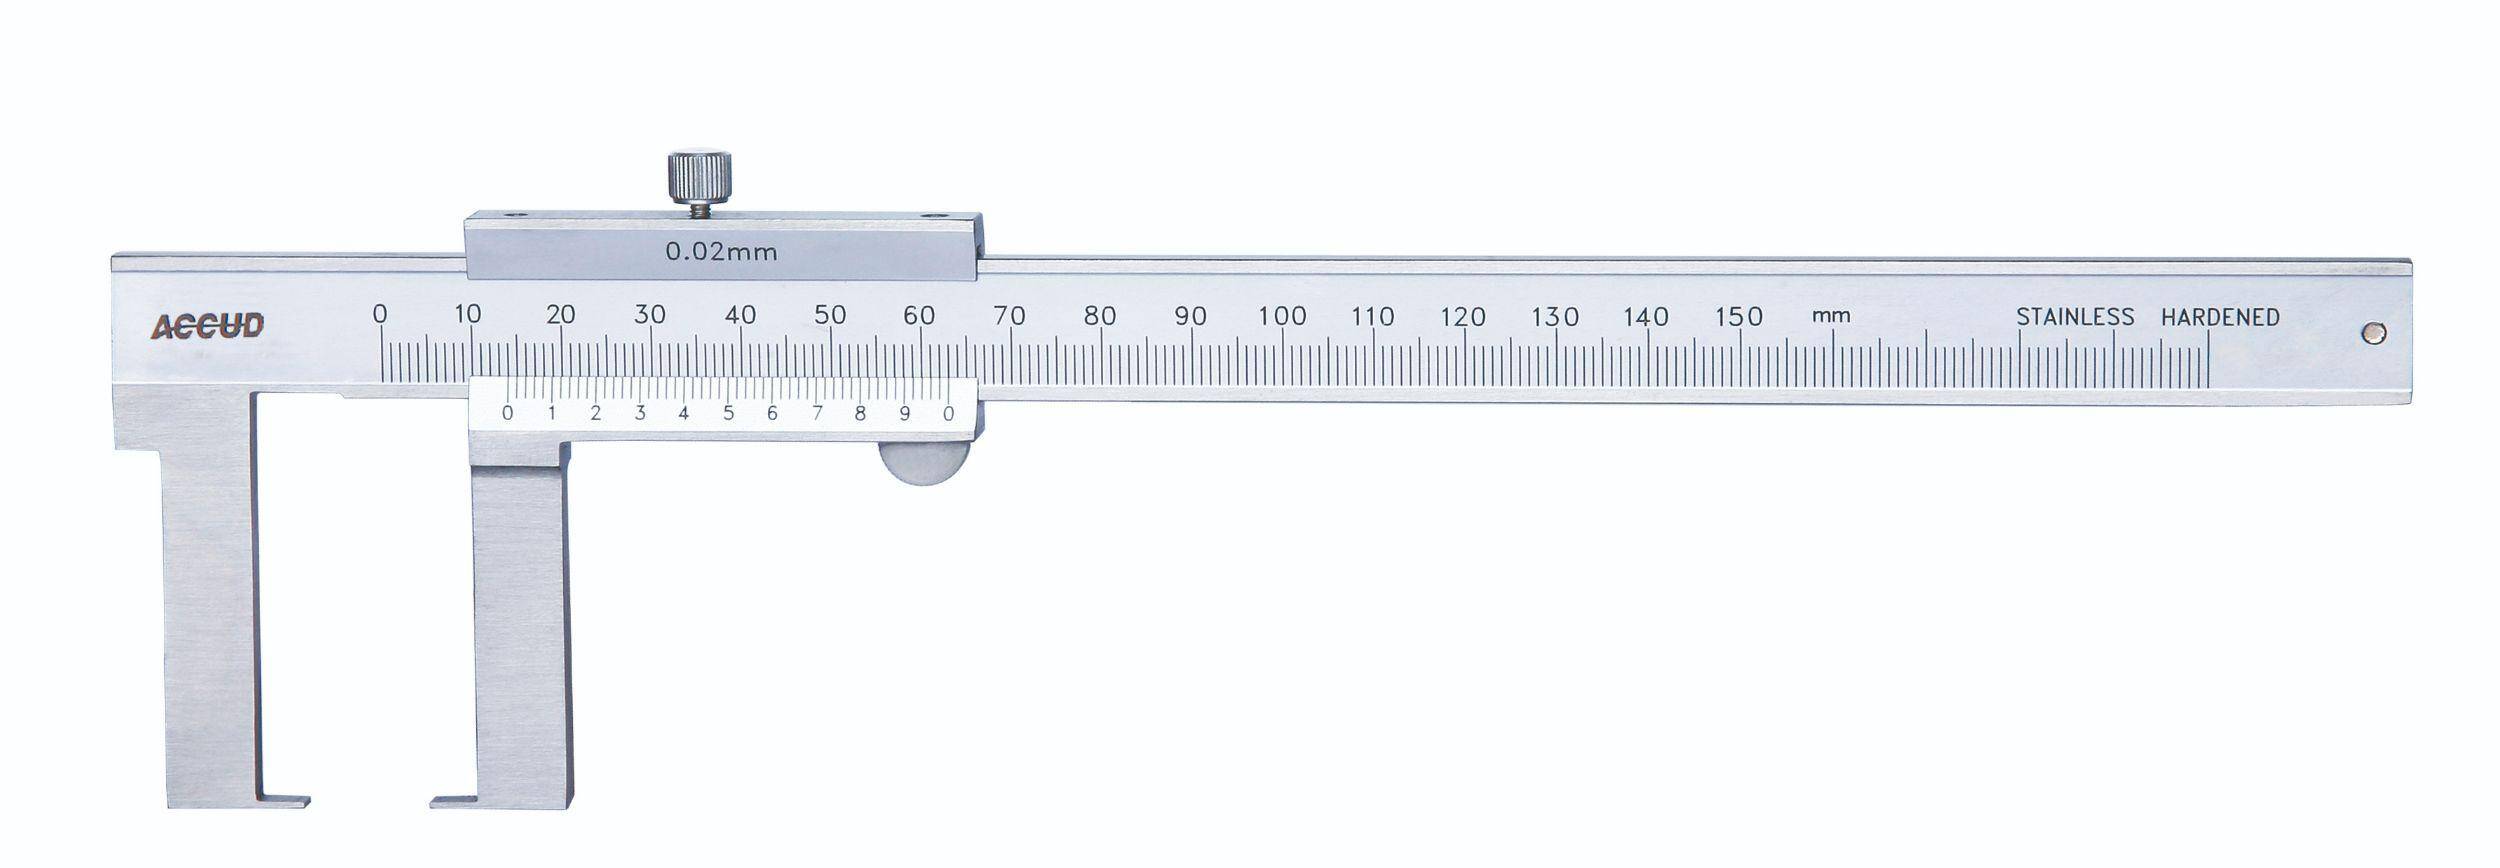 ACCUD suwmiarka analogowa 150/0,02 mm do pomiarów zewnętrznych 143-006-11 (Zdjęcie 1)